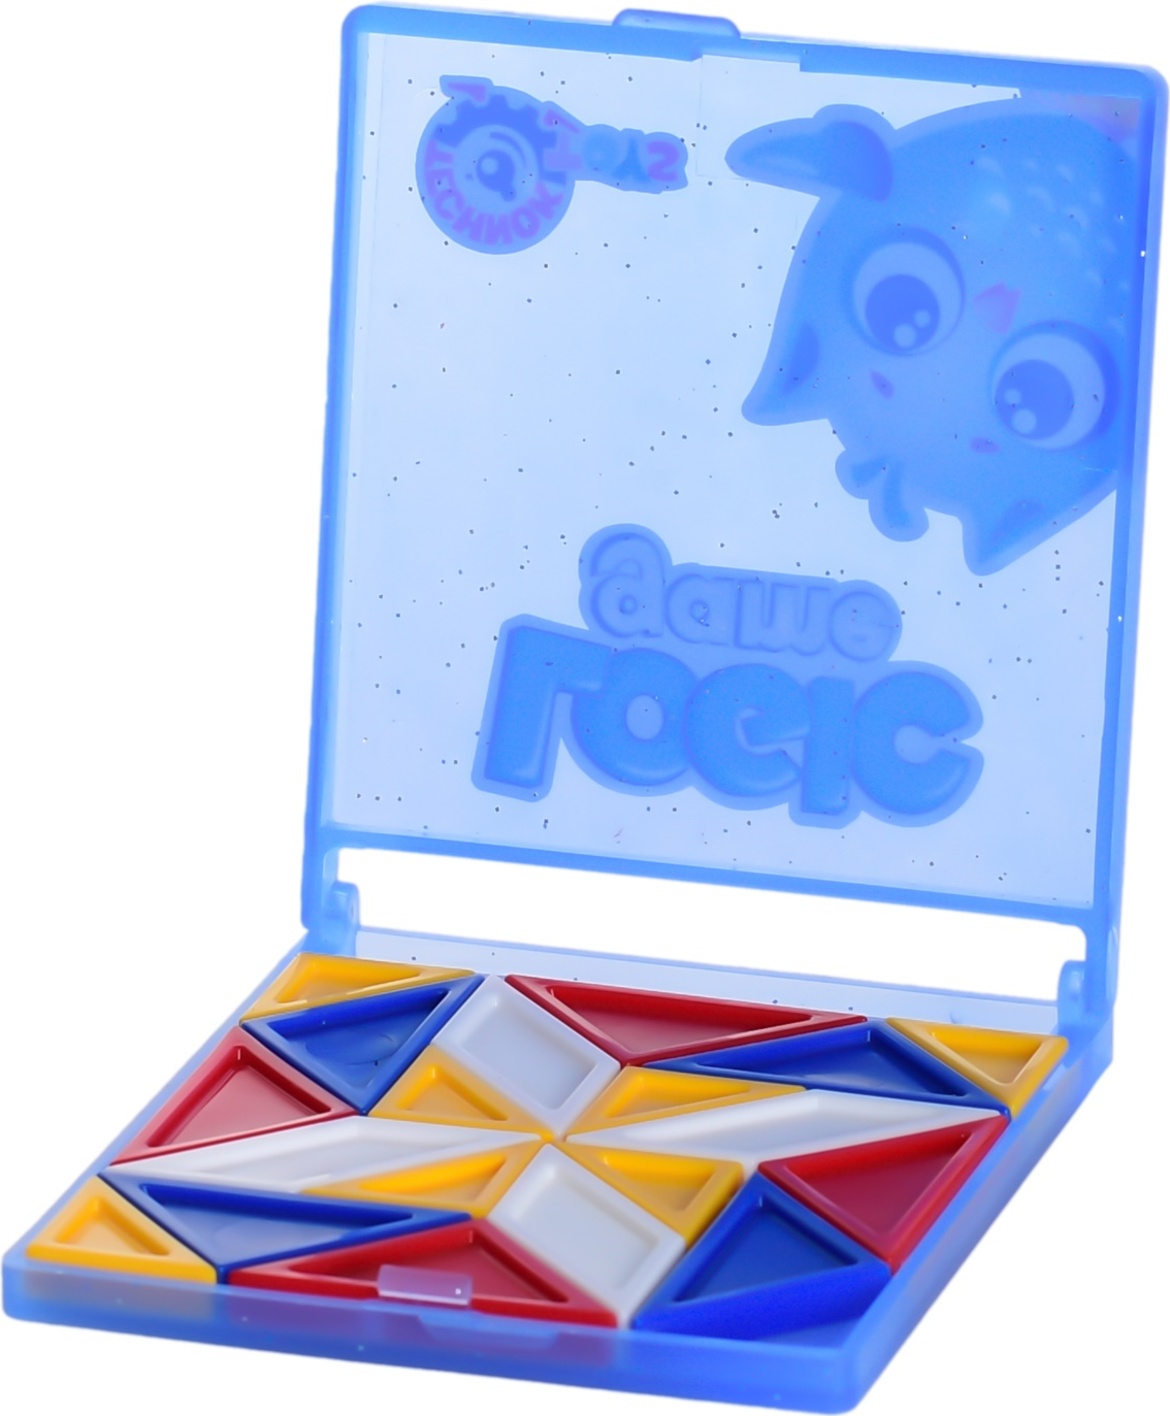 Logická hra - Kaleidoskop v plastové krabičce